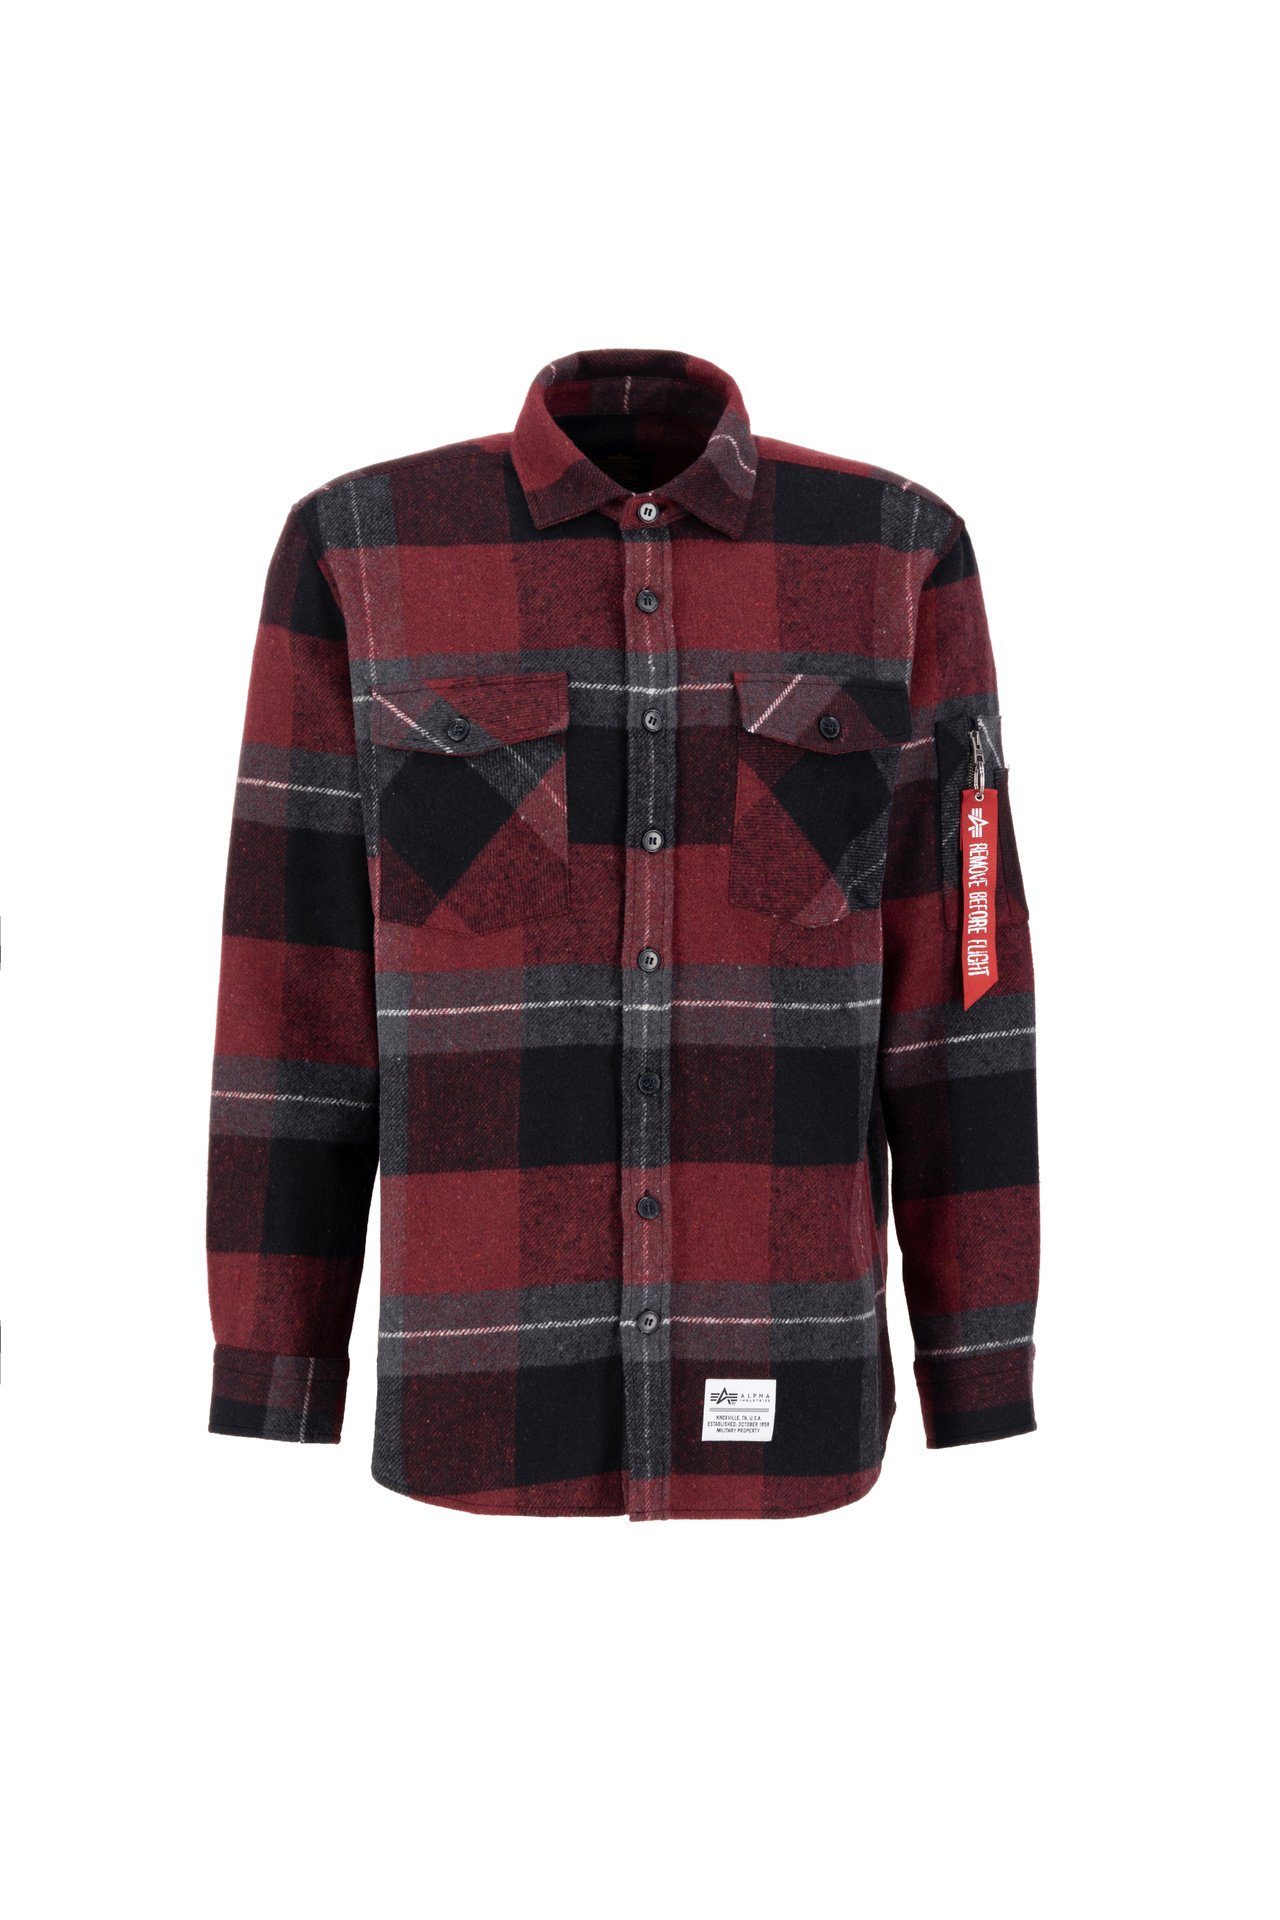 Outdoorhemd Industries black/red Herren Flannel Shirt Alpha Industries Alpha Langarmhemd